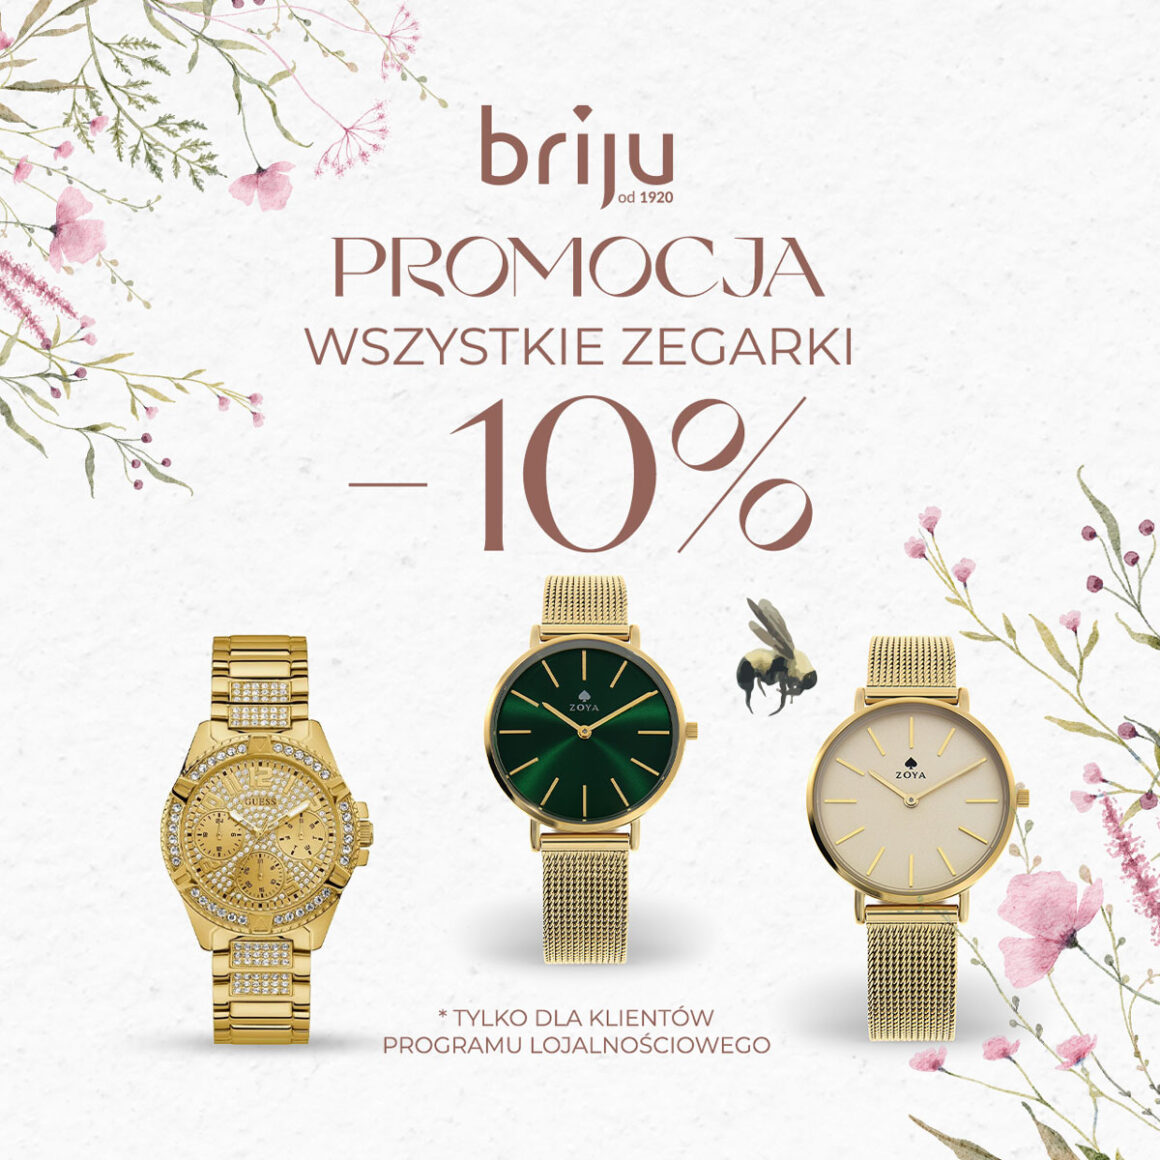 -10% na wszystkie zegarki w Briju!!